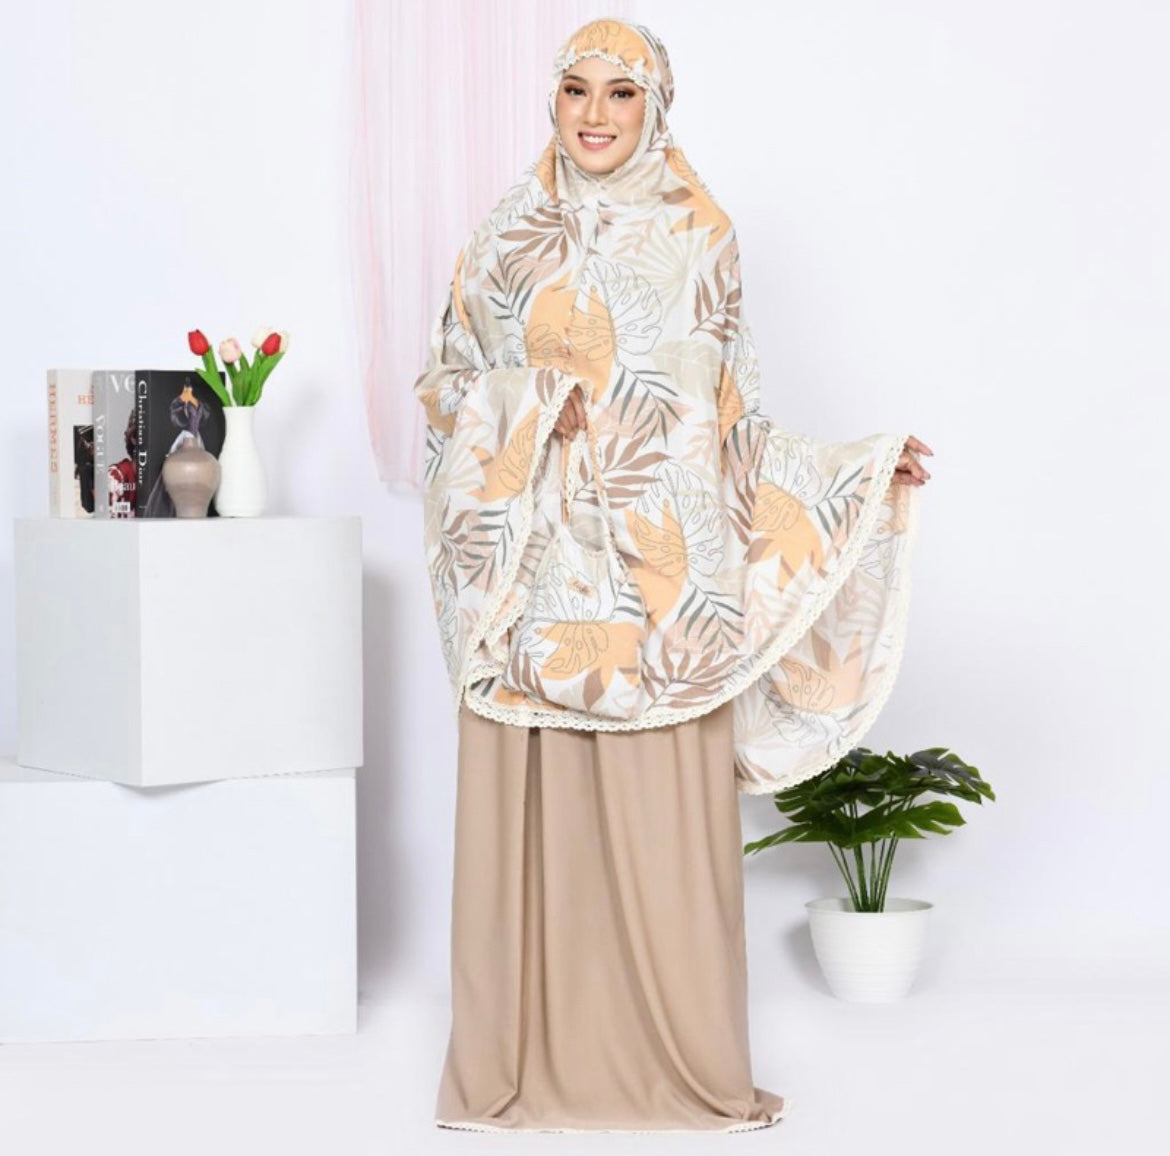 Women prayer clothes Aisha collection